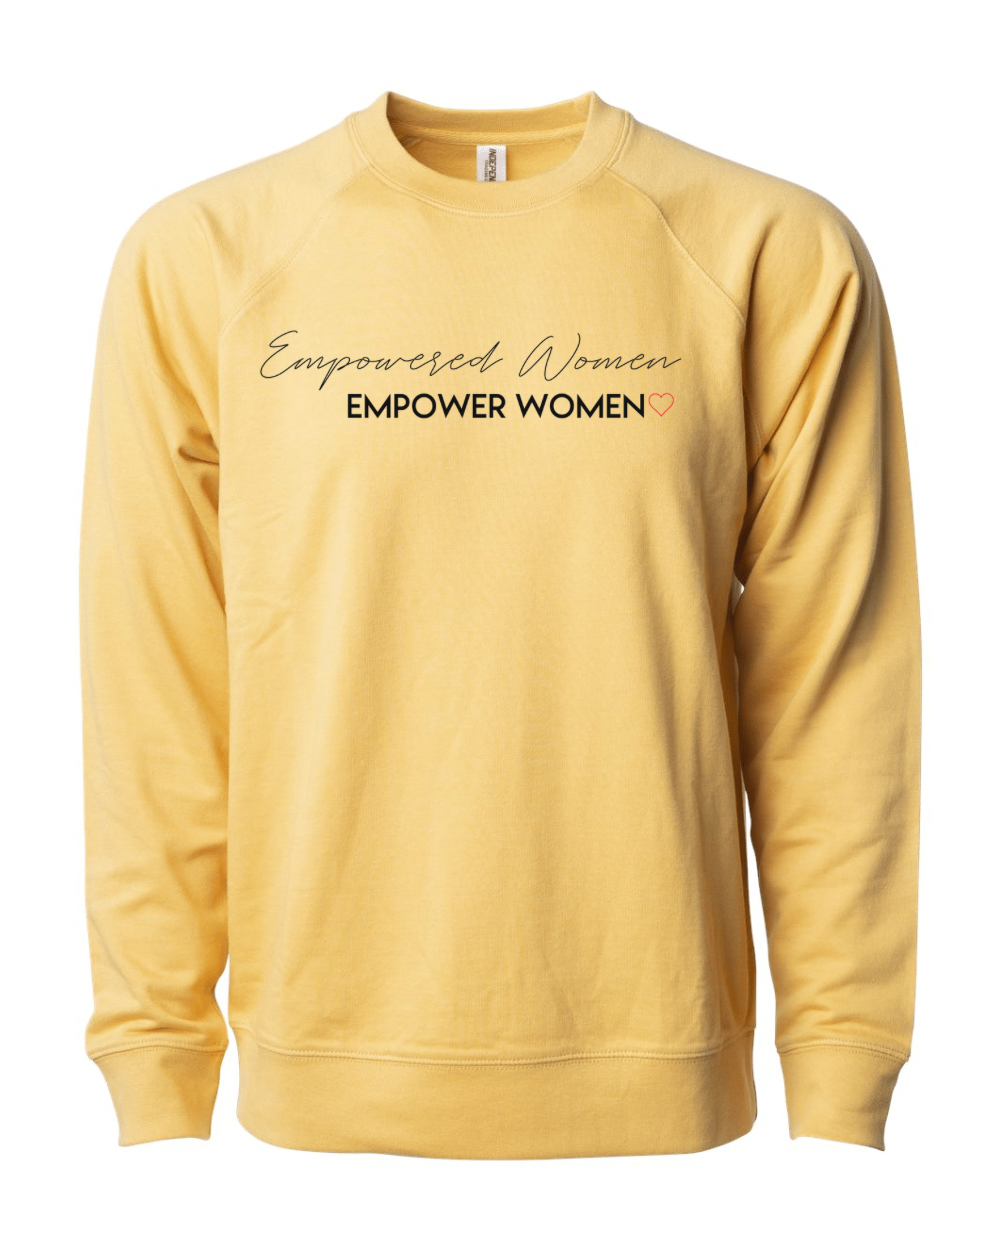 Empowered Women | Harvest Gold Crewneck